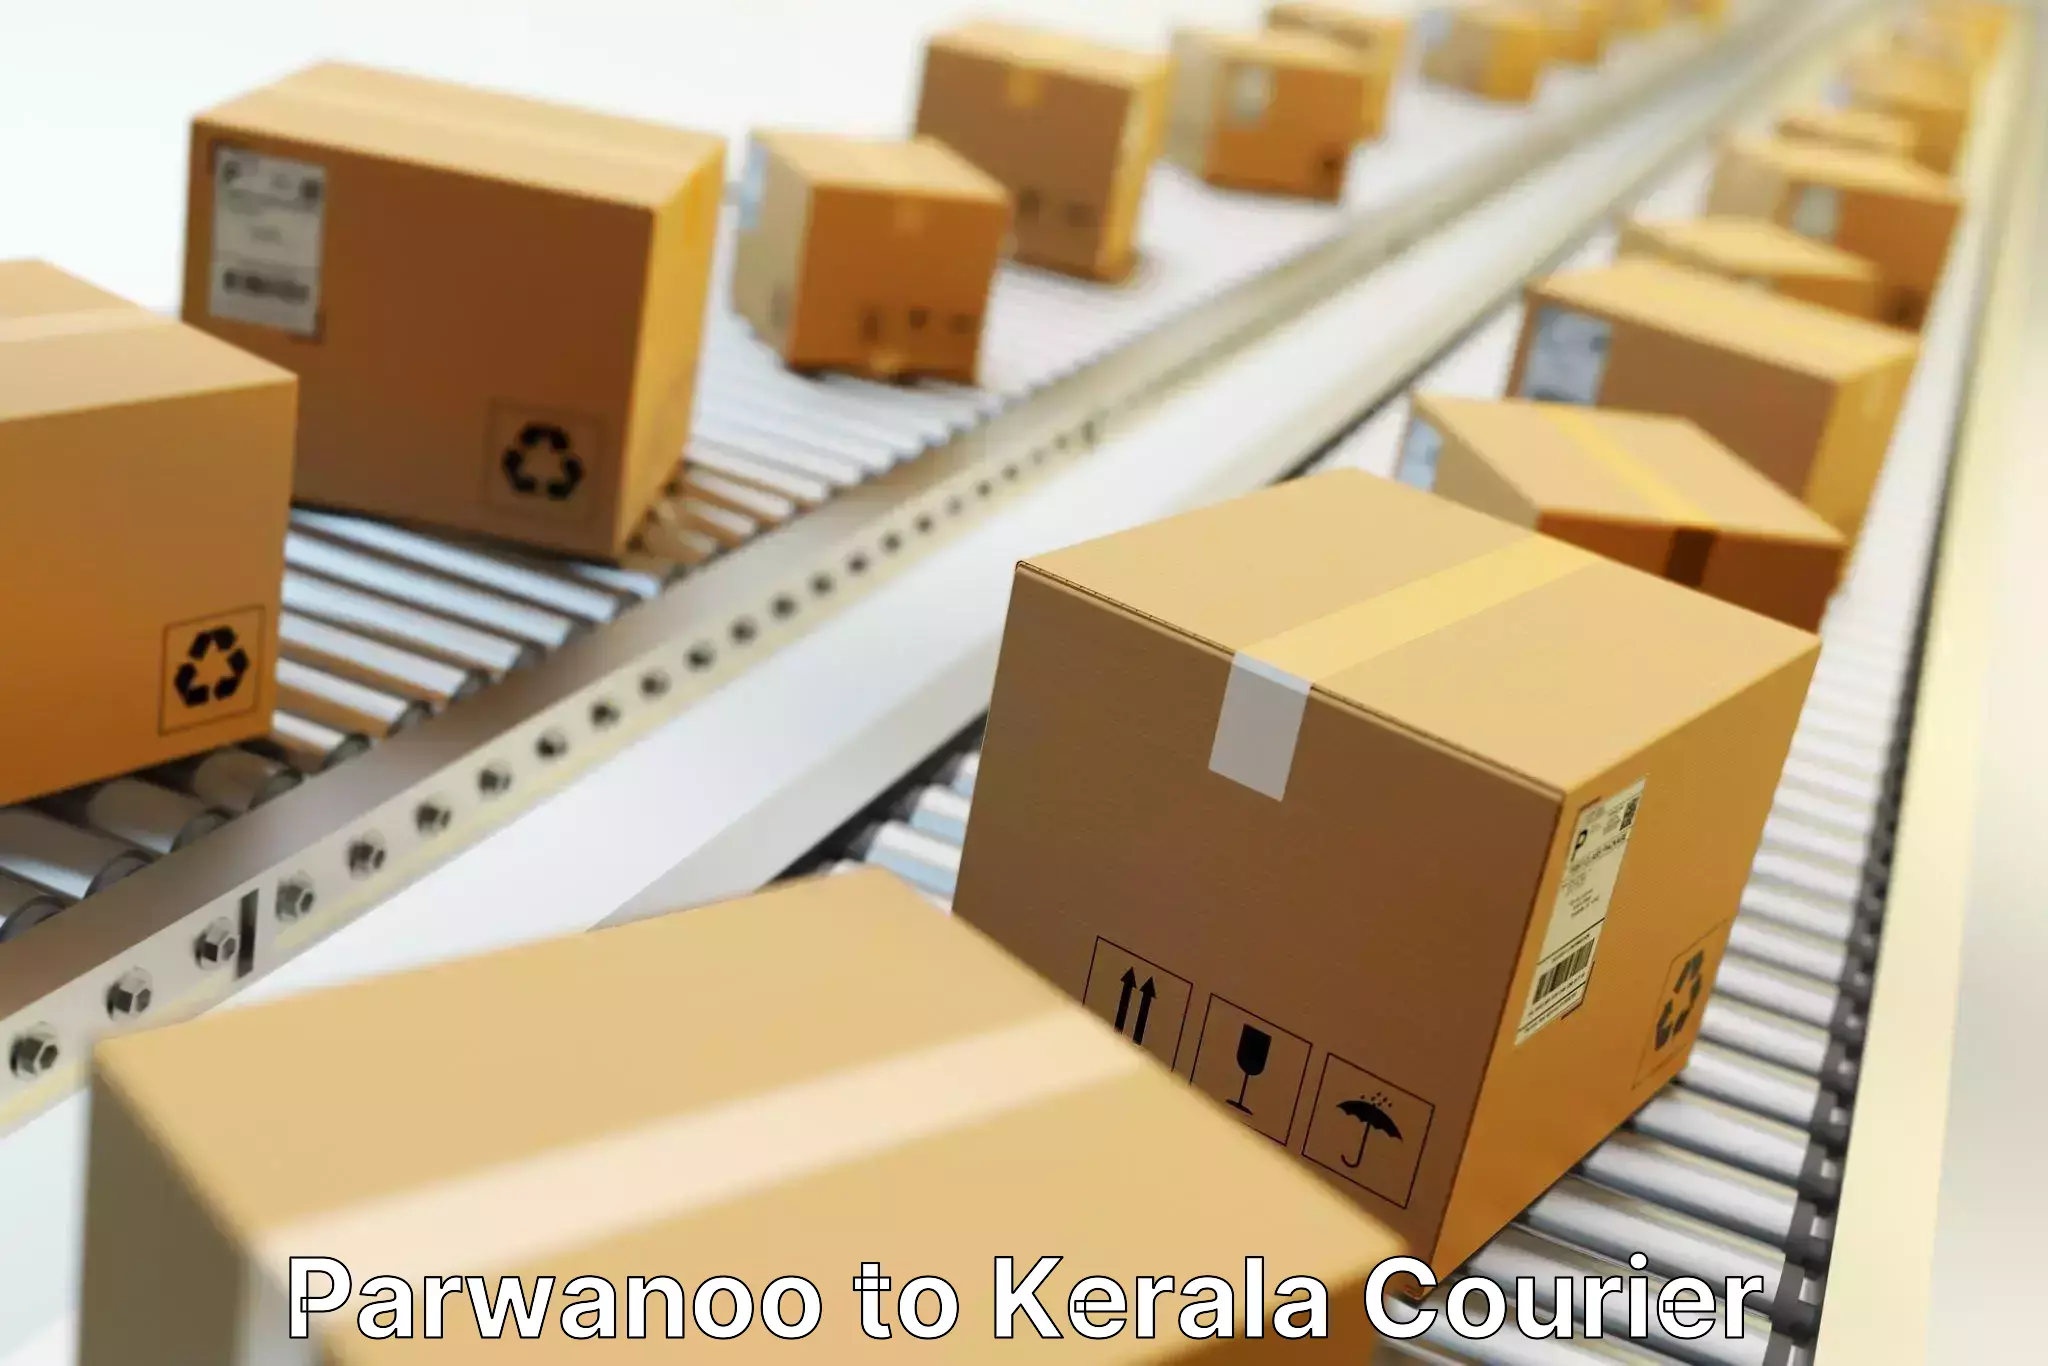 Efficient order fulfillment Parwanoo to Kerala